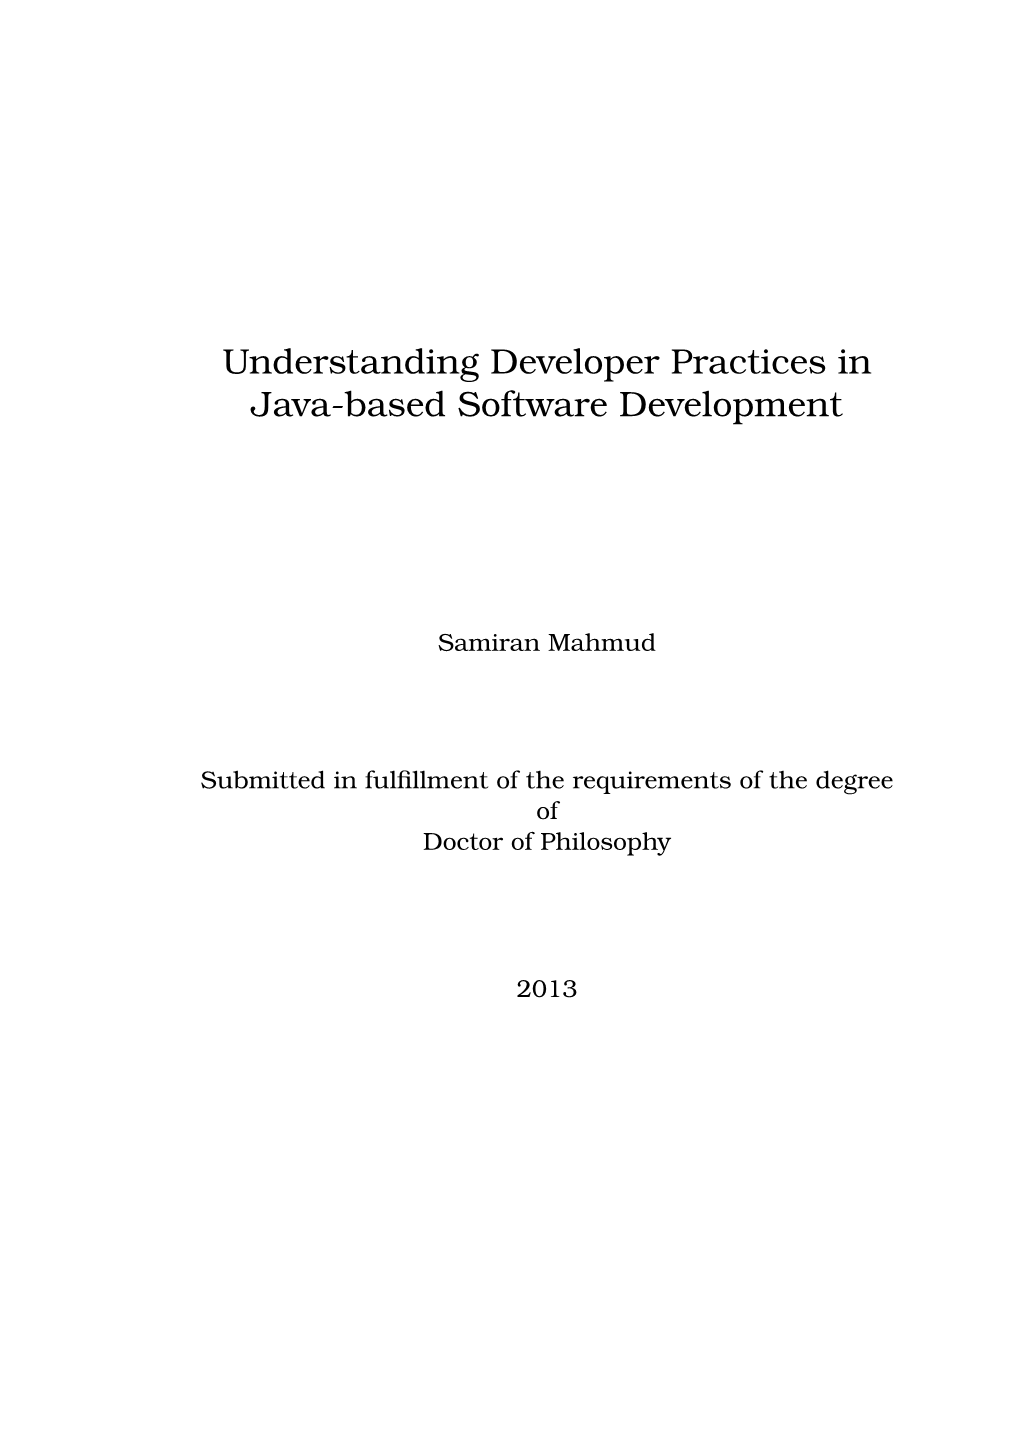 Understanding Developer Practices in Java-Based Software Development